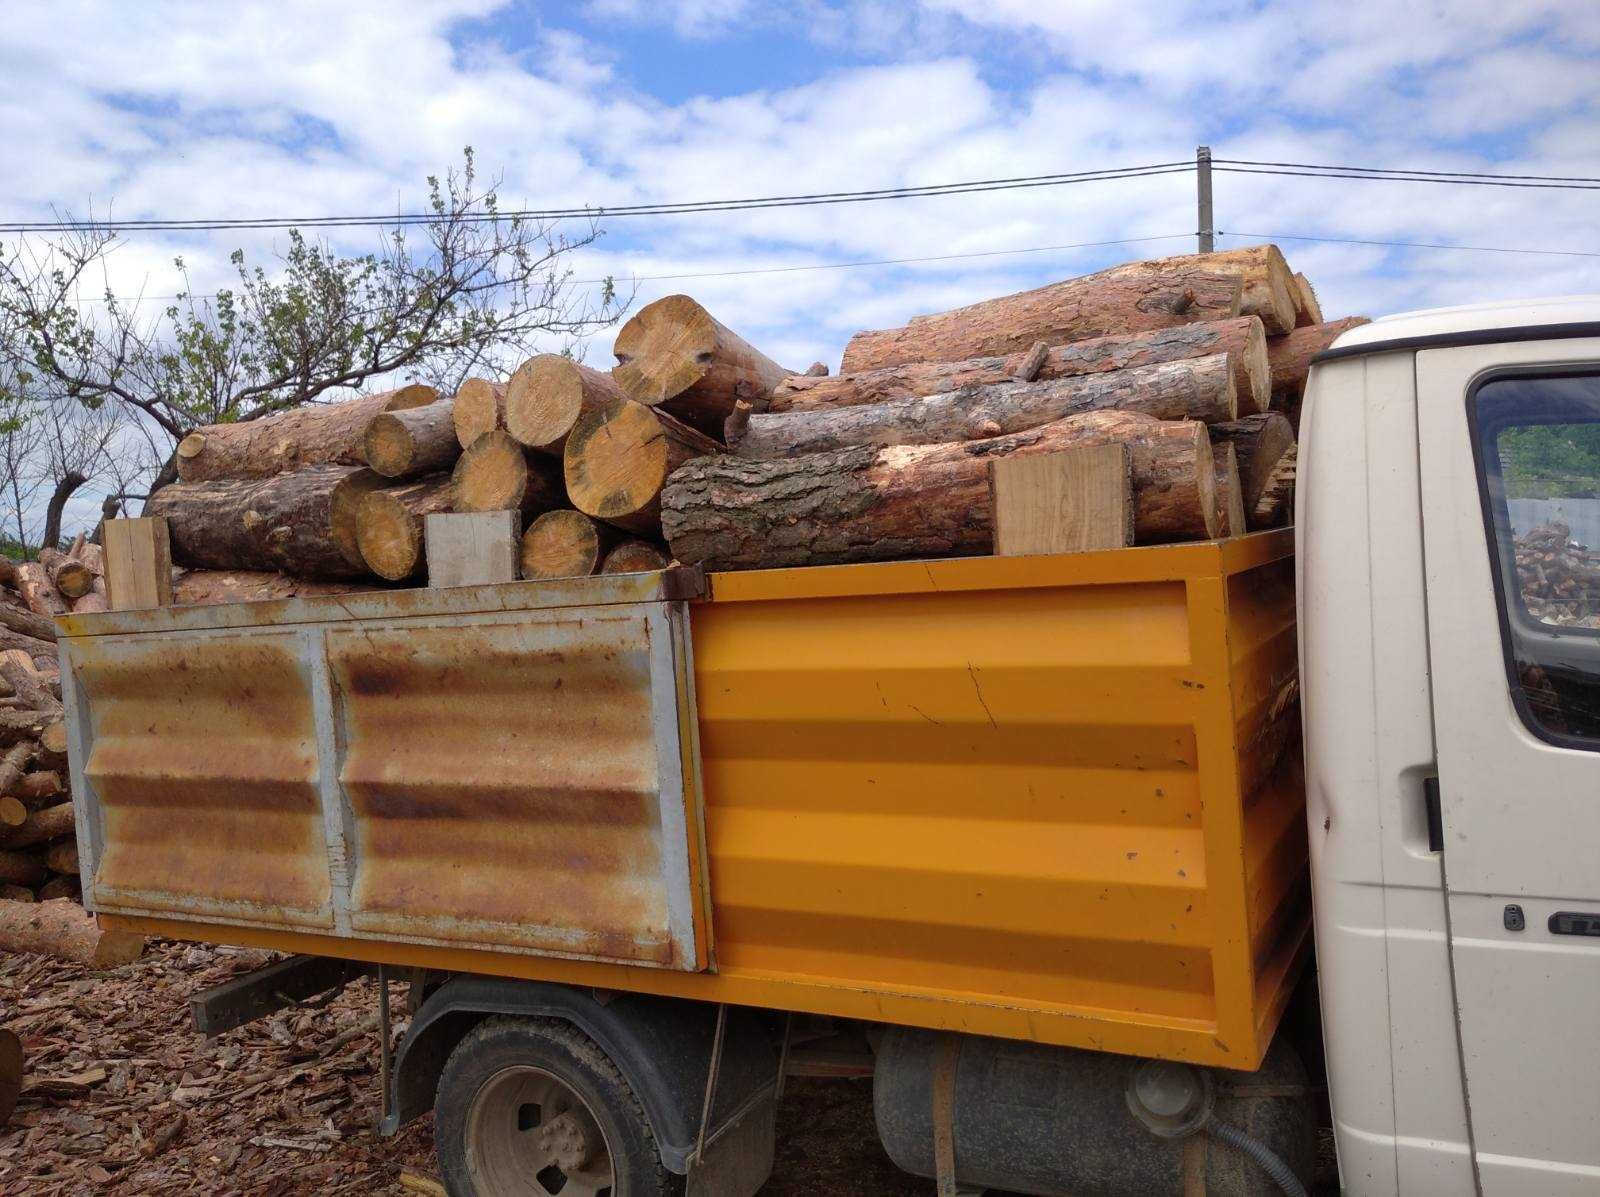 Купуйте якісні дрова оптом та в роздріб в Одесі та області